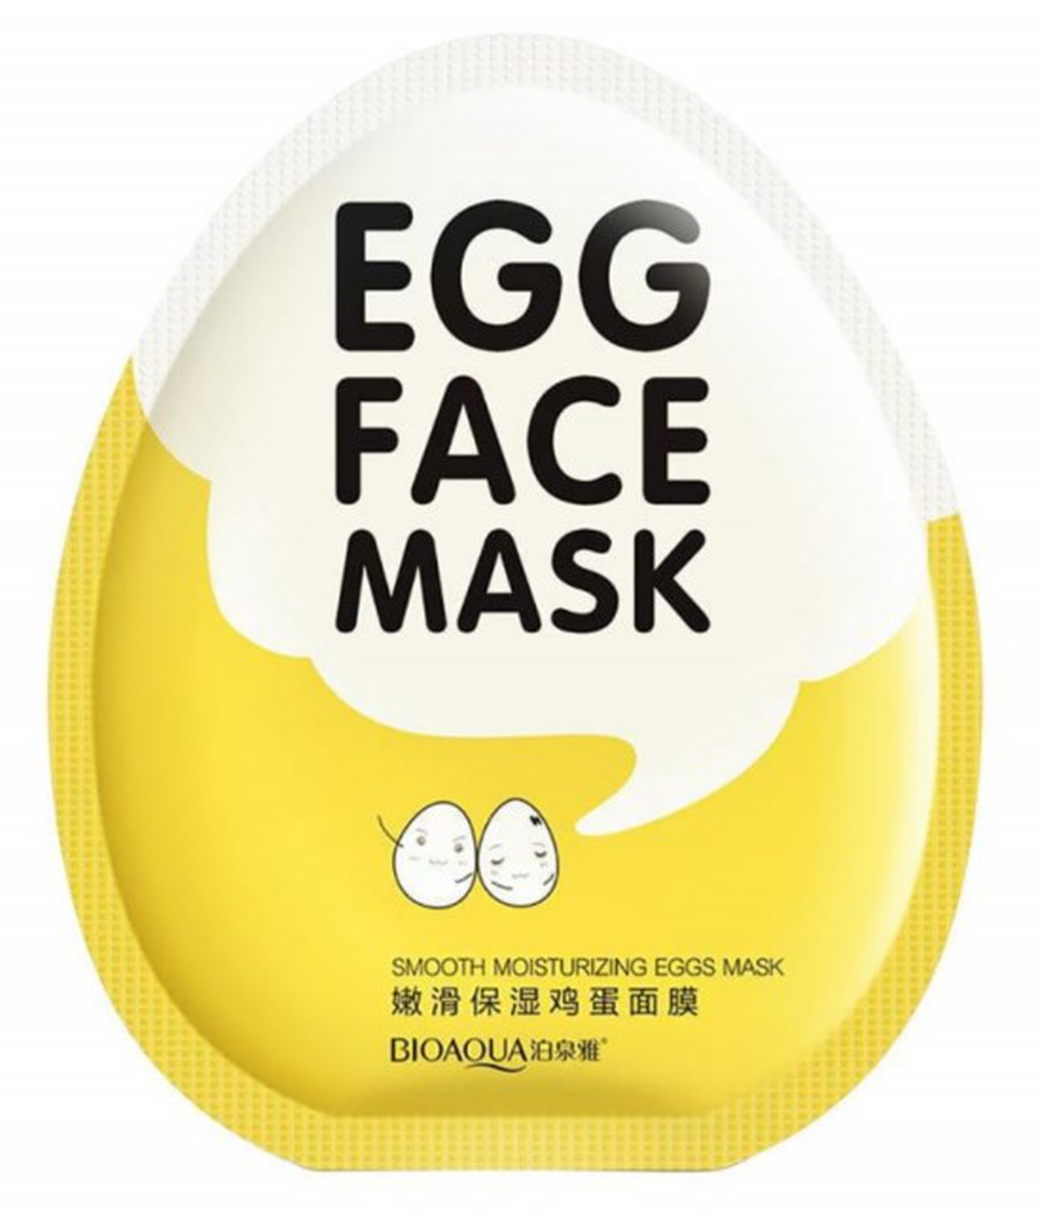 Тканевая яичная маска для лица Bioaqua для глубого увлажнения кожи фото